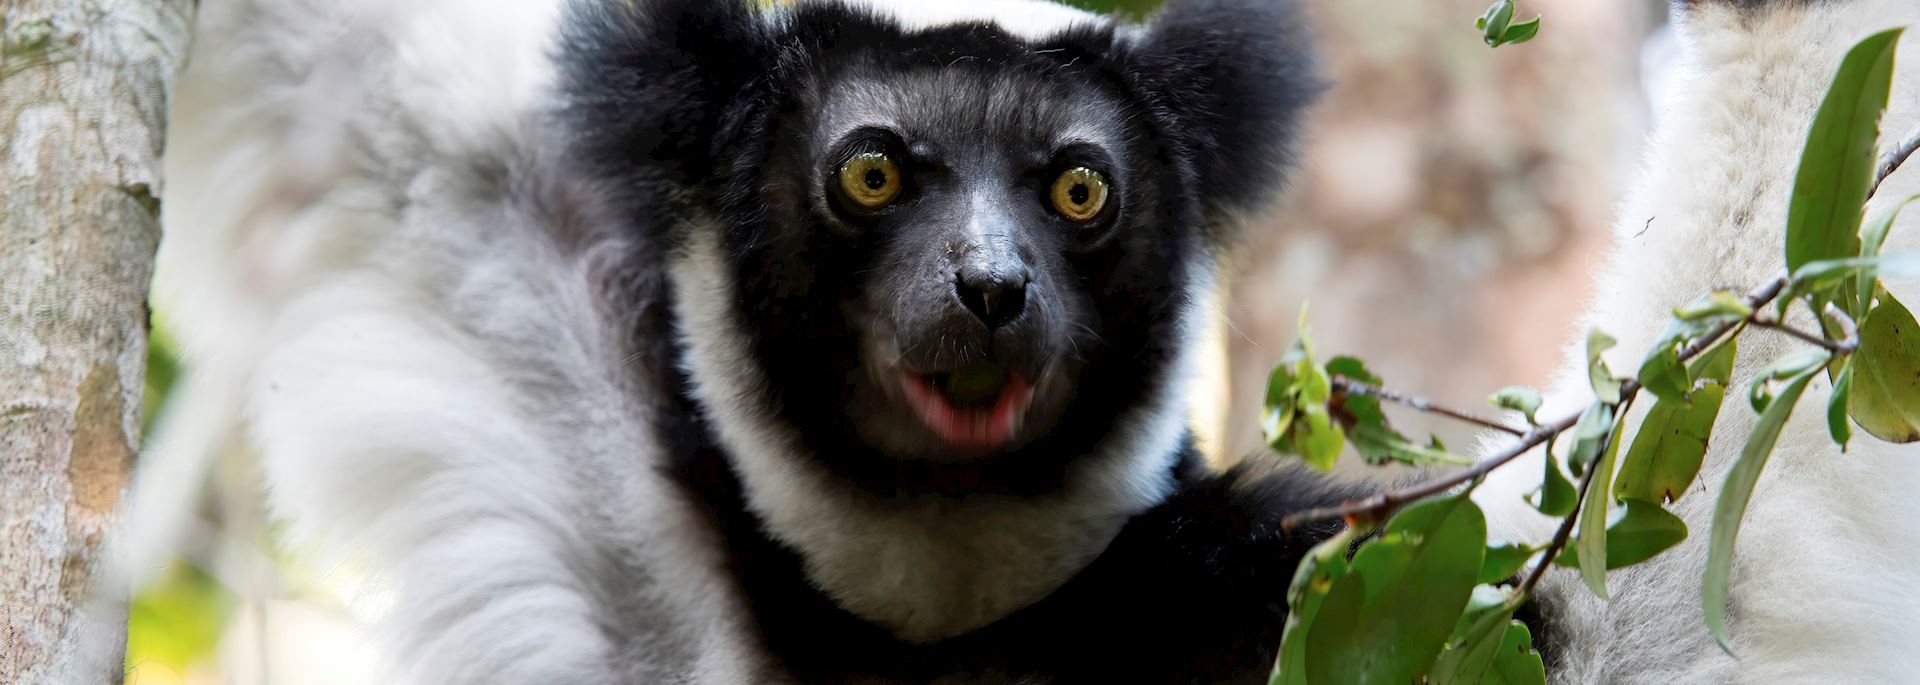 Indri in eastern Madagascar